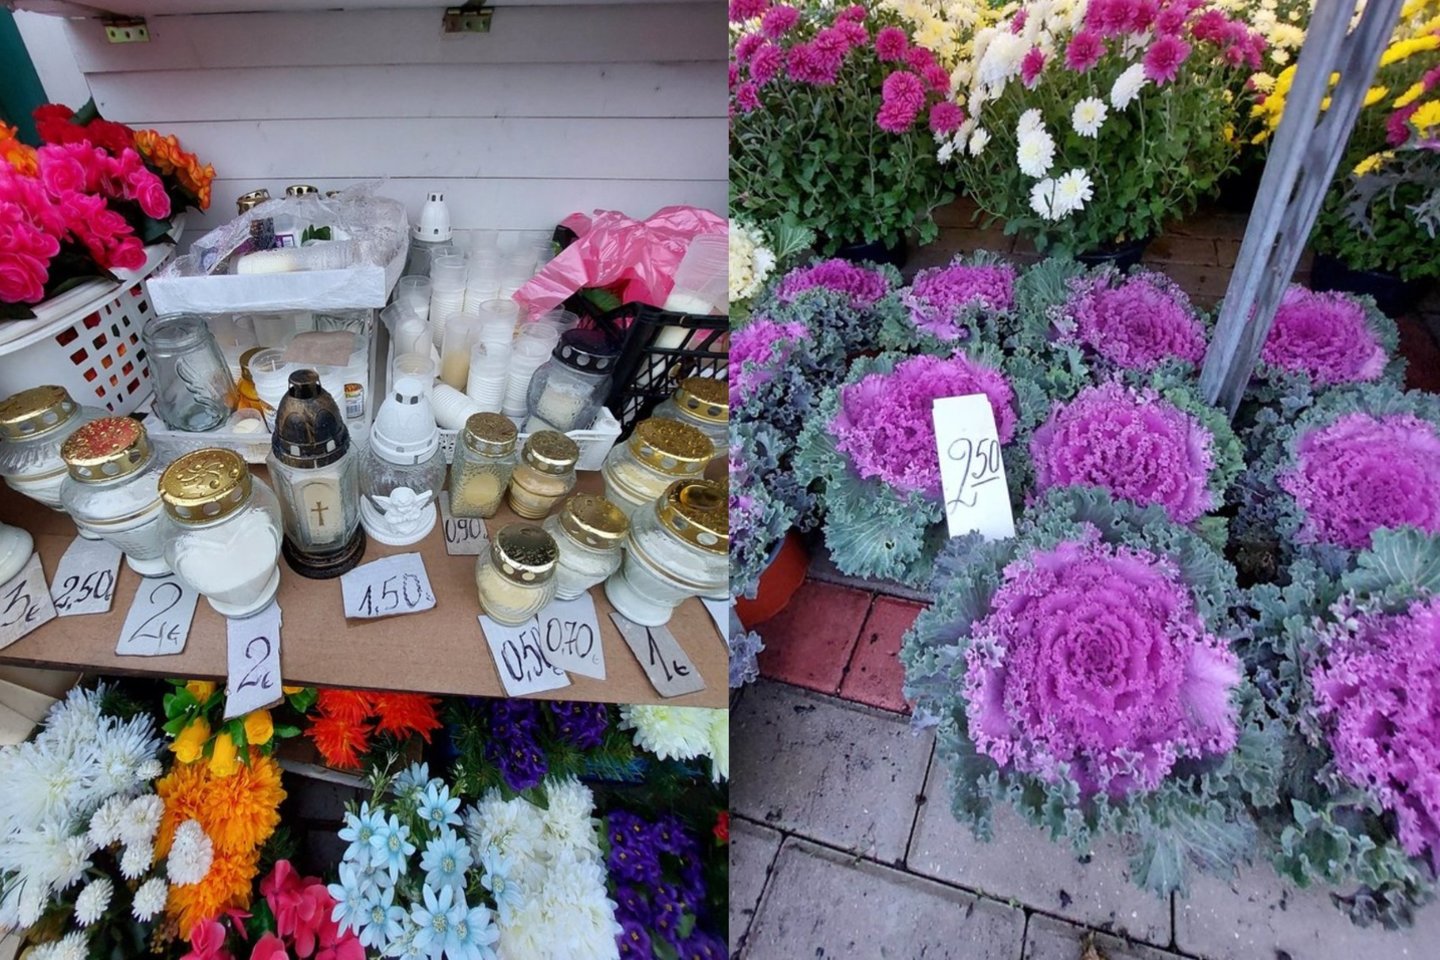 Vėlinėms vis artėjant, lietuviai iš parduotuvių ir turgaus tempia kapų žvakes, vainikus, gėles.<br>Asociatyvi M.Žemrietės nuotr.